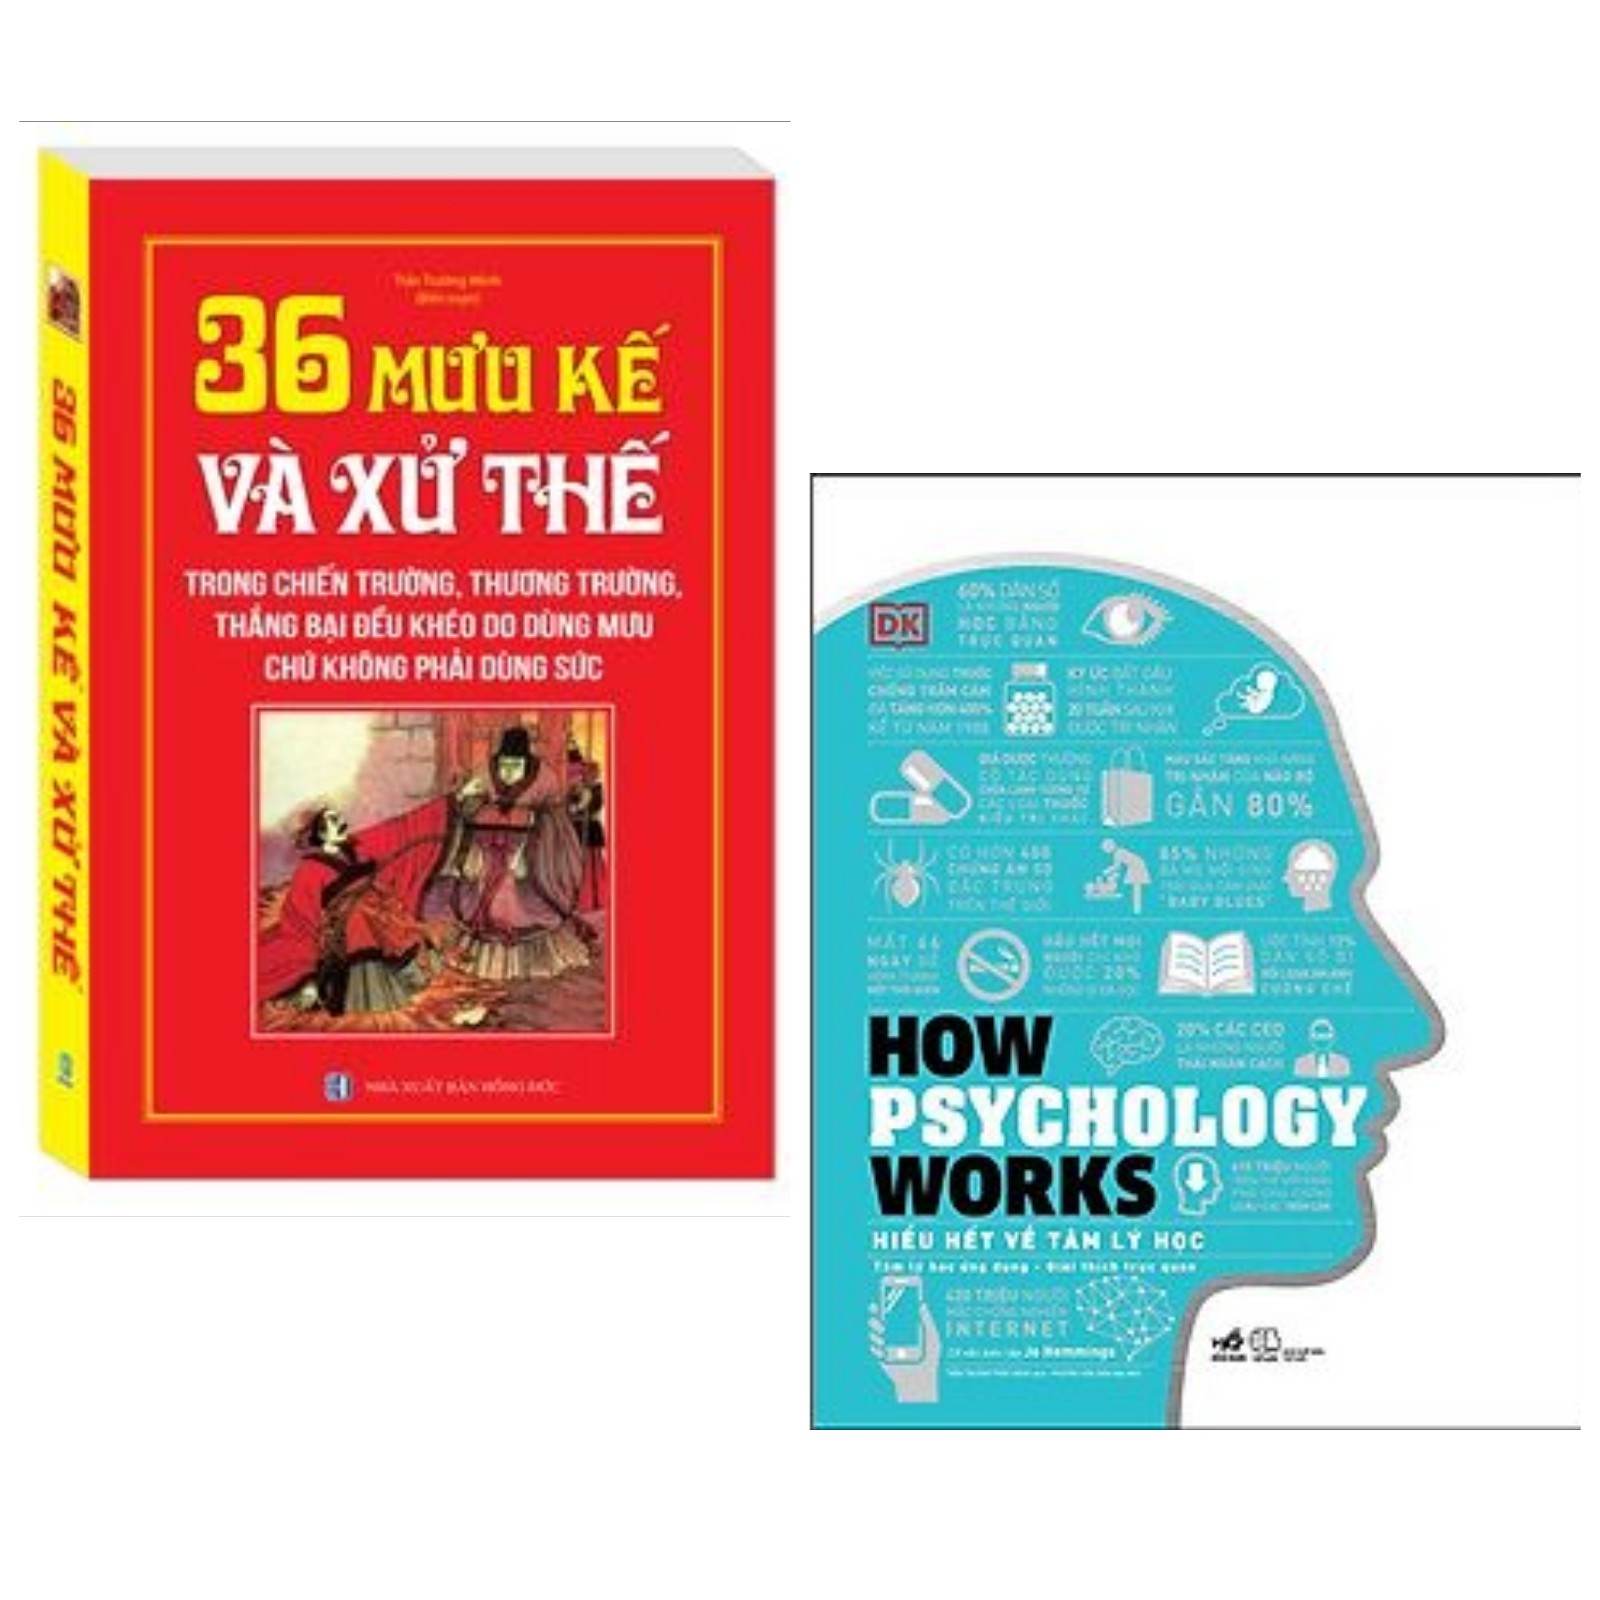 Hình ảnh Combo 2 cuốn sách hữu ích về tư duy,cảm xúc con người: 36 Mưu Kế và Sử Thế (trong chiến trường, thương trường, thắng bại đều khéo do dùng mưu chứ không phải dùng sức) + How Psychology Works - Hiểu Hết Về Tâm Lý Học